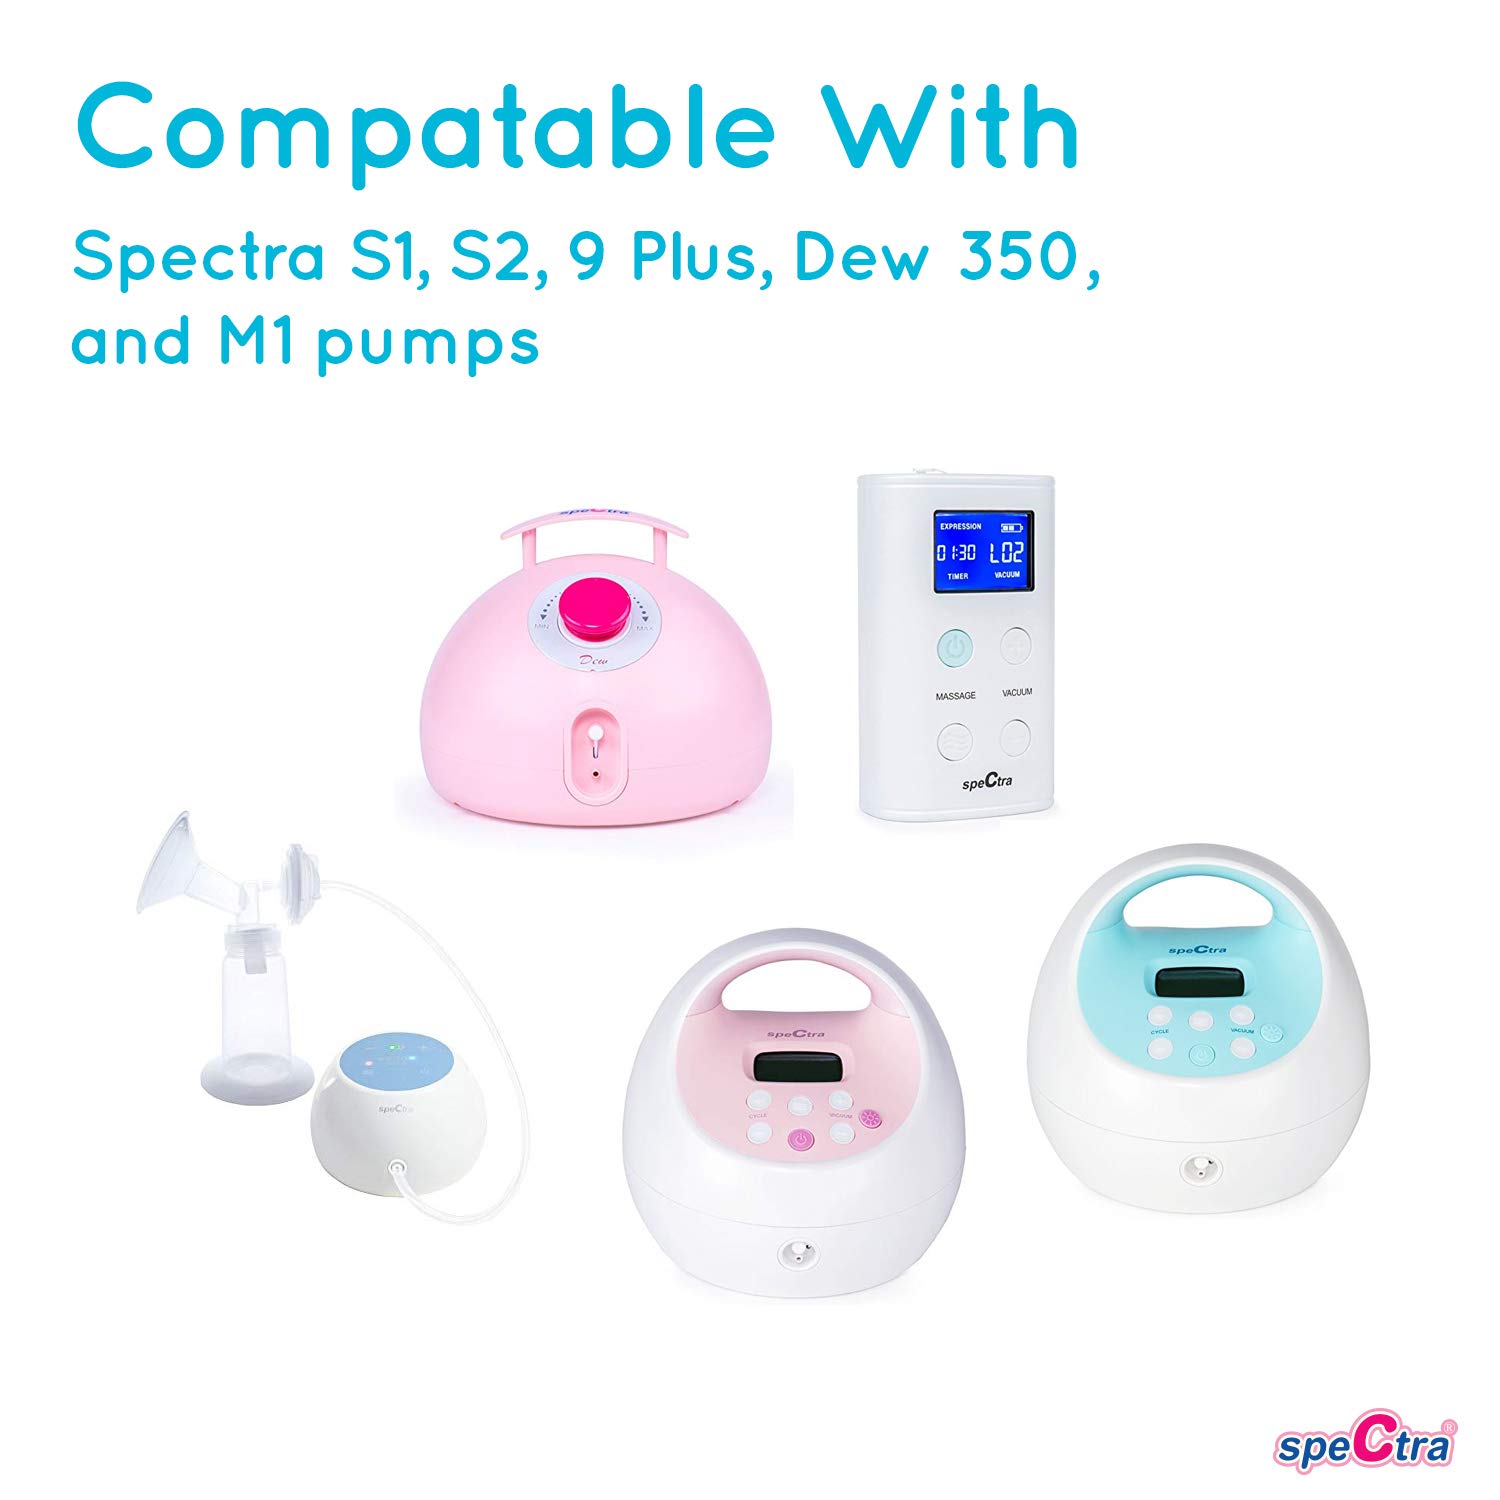 https://www.mommygear.com/media/spectra/spectra-pump-compatibility.jpg